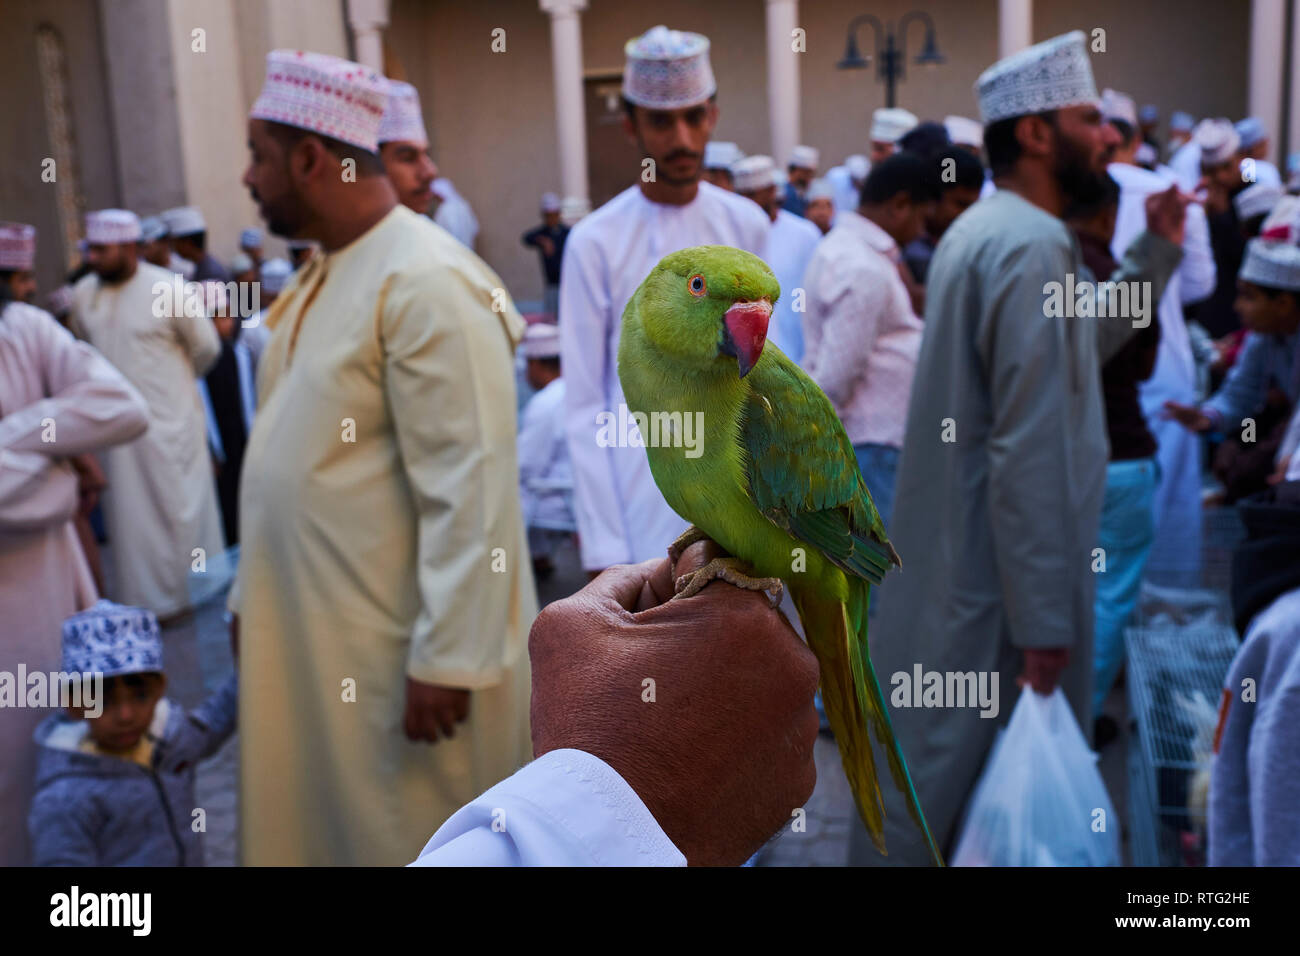 Sultanat d'Oman, Ad-Dakhiliyah Région, Nizwa, vendredi marché de bétail, perruche Banque D'Images